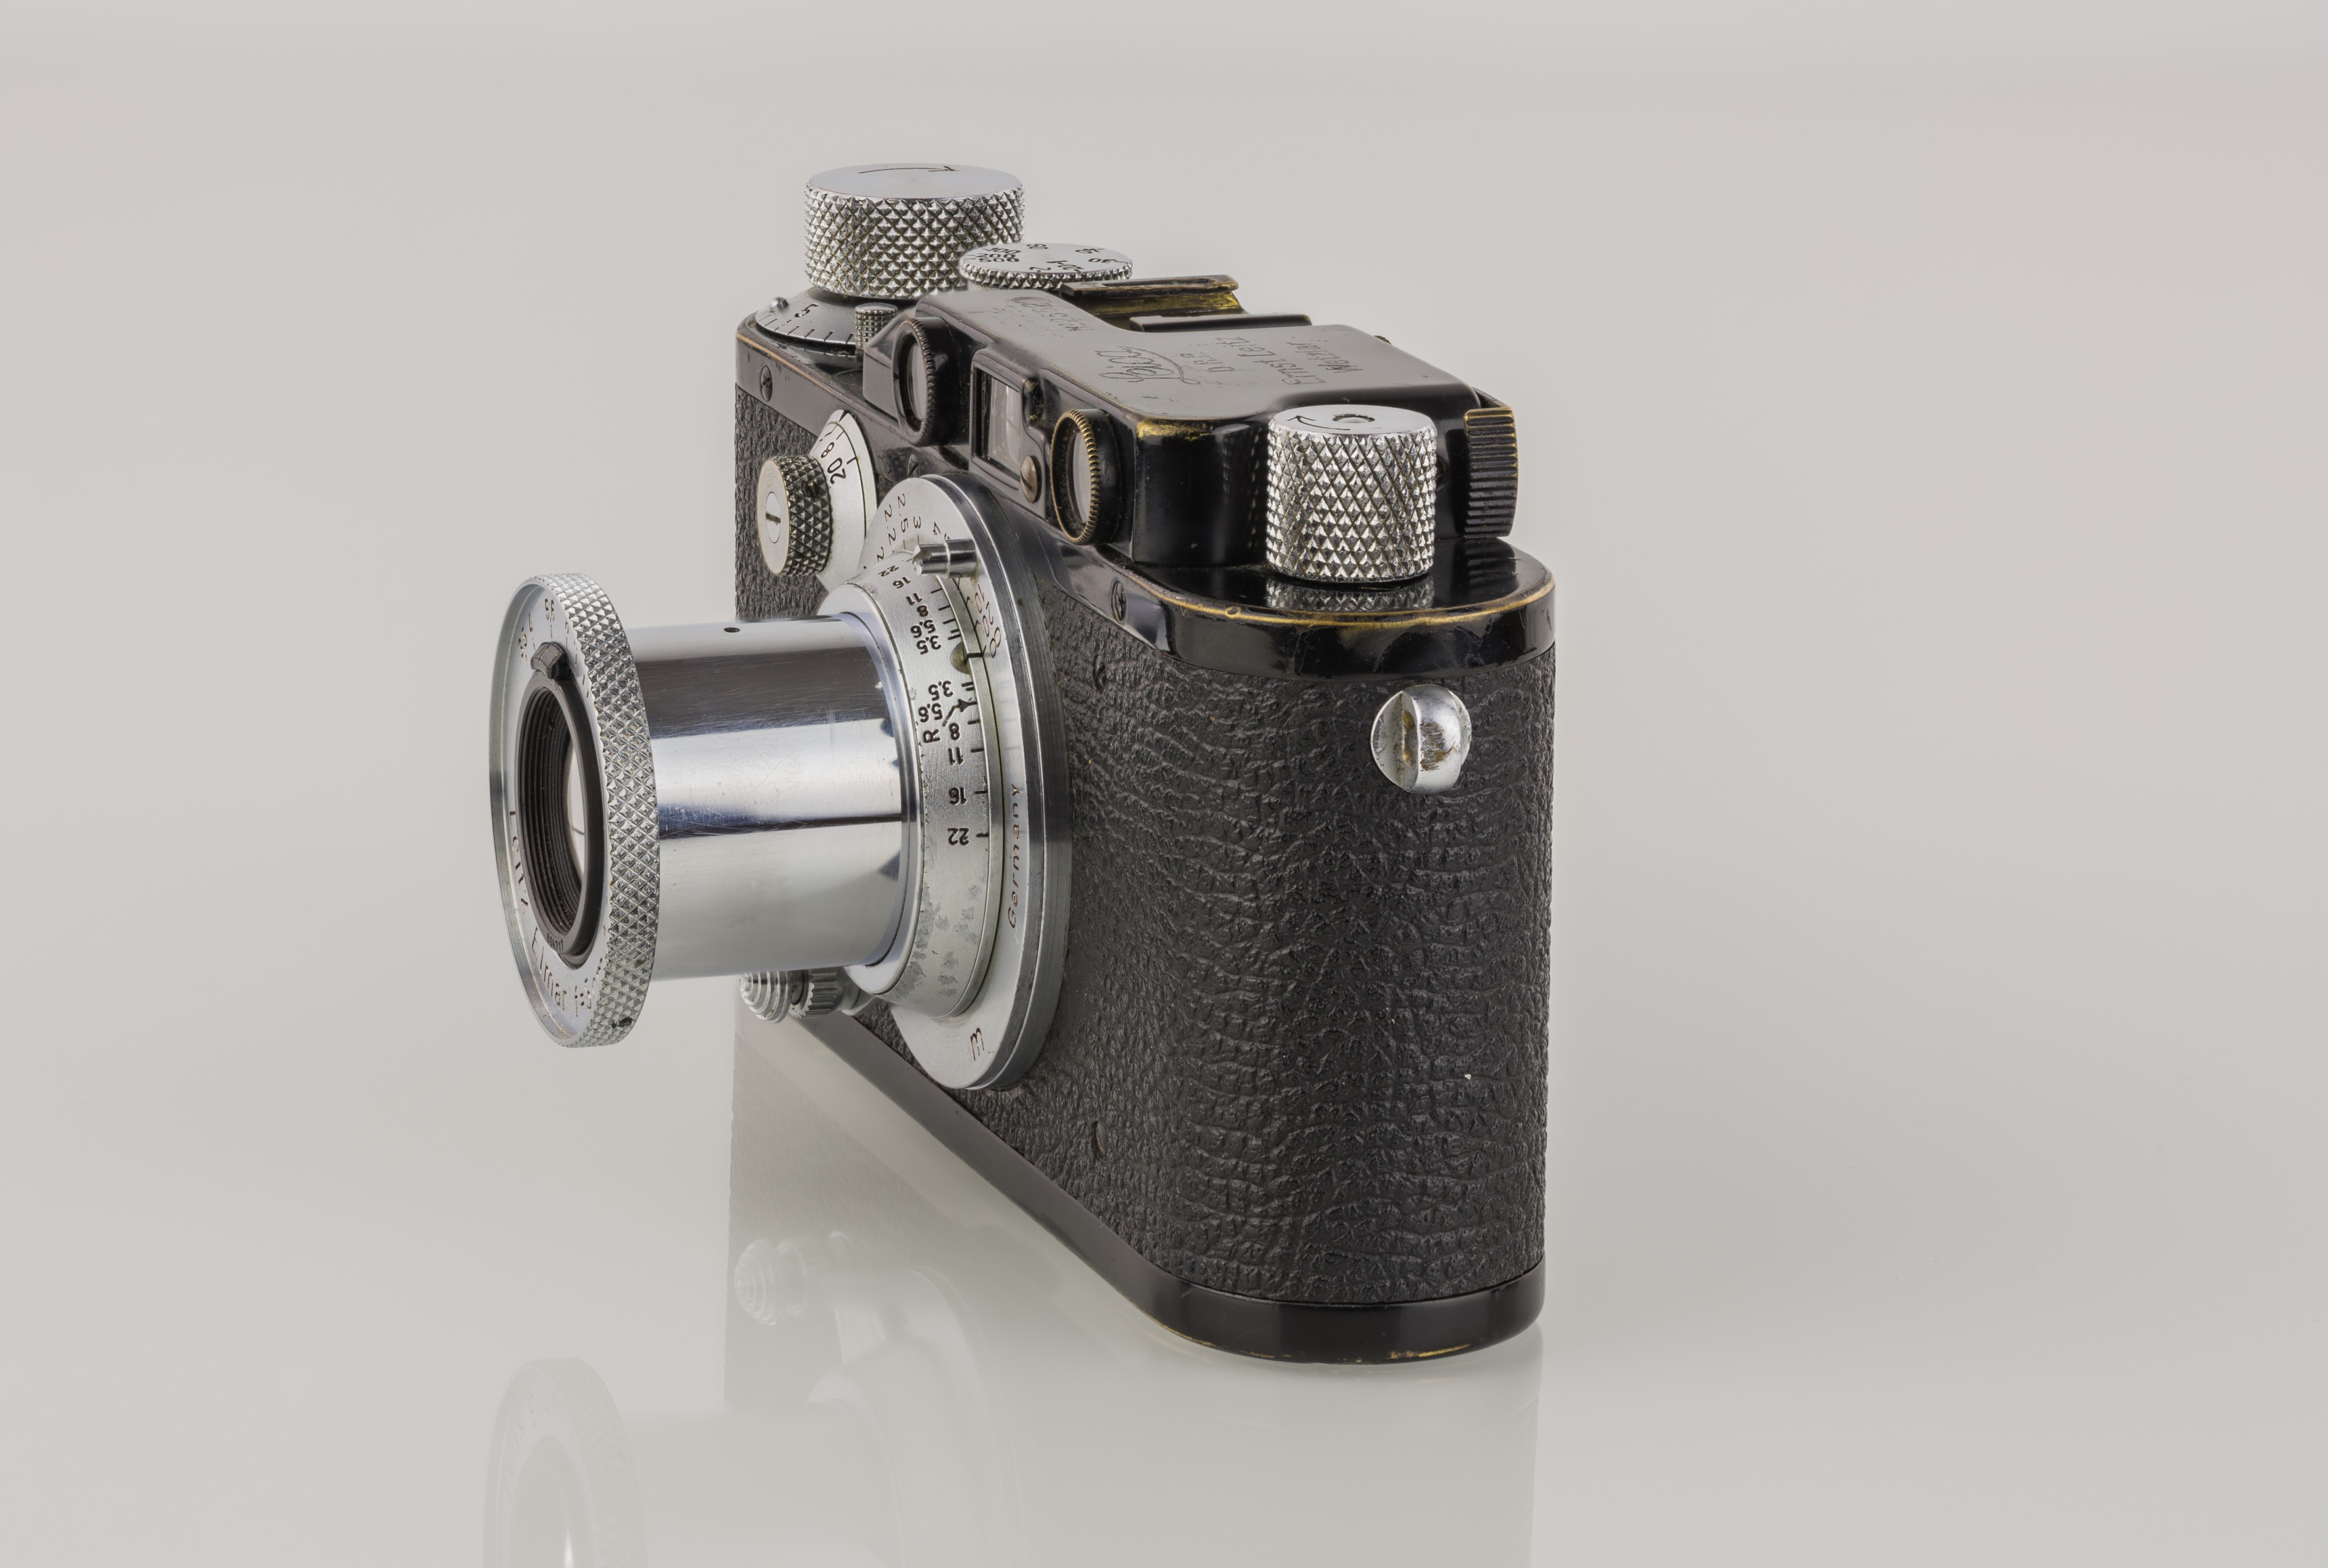 LEI0221 199 Leica III schwarz Umbau von Leica I - Sn. 25629 1930-M39 side view-6498 hf